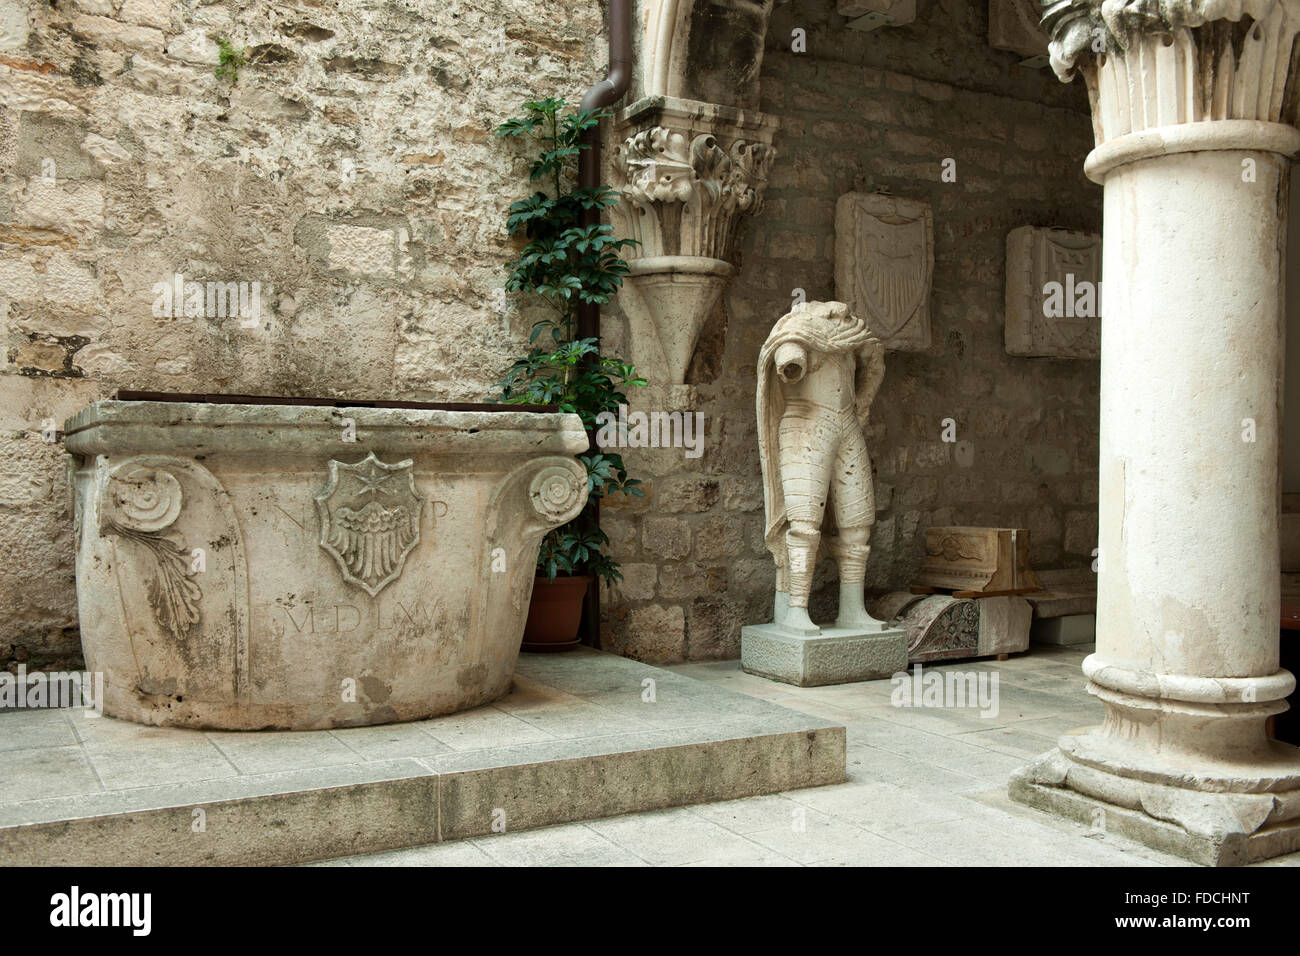 Kroatien, Dalmatien, Split, das Stadtmusem im Papalic Palast, einem spätgotischen ( venezianische Gotik ) Palast. Stock Photo